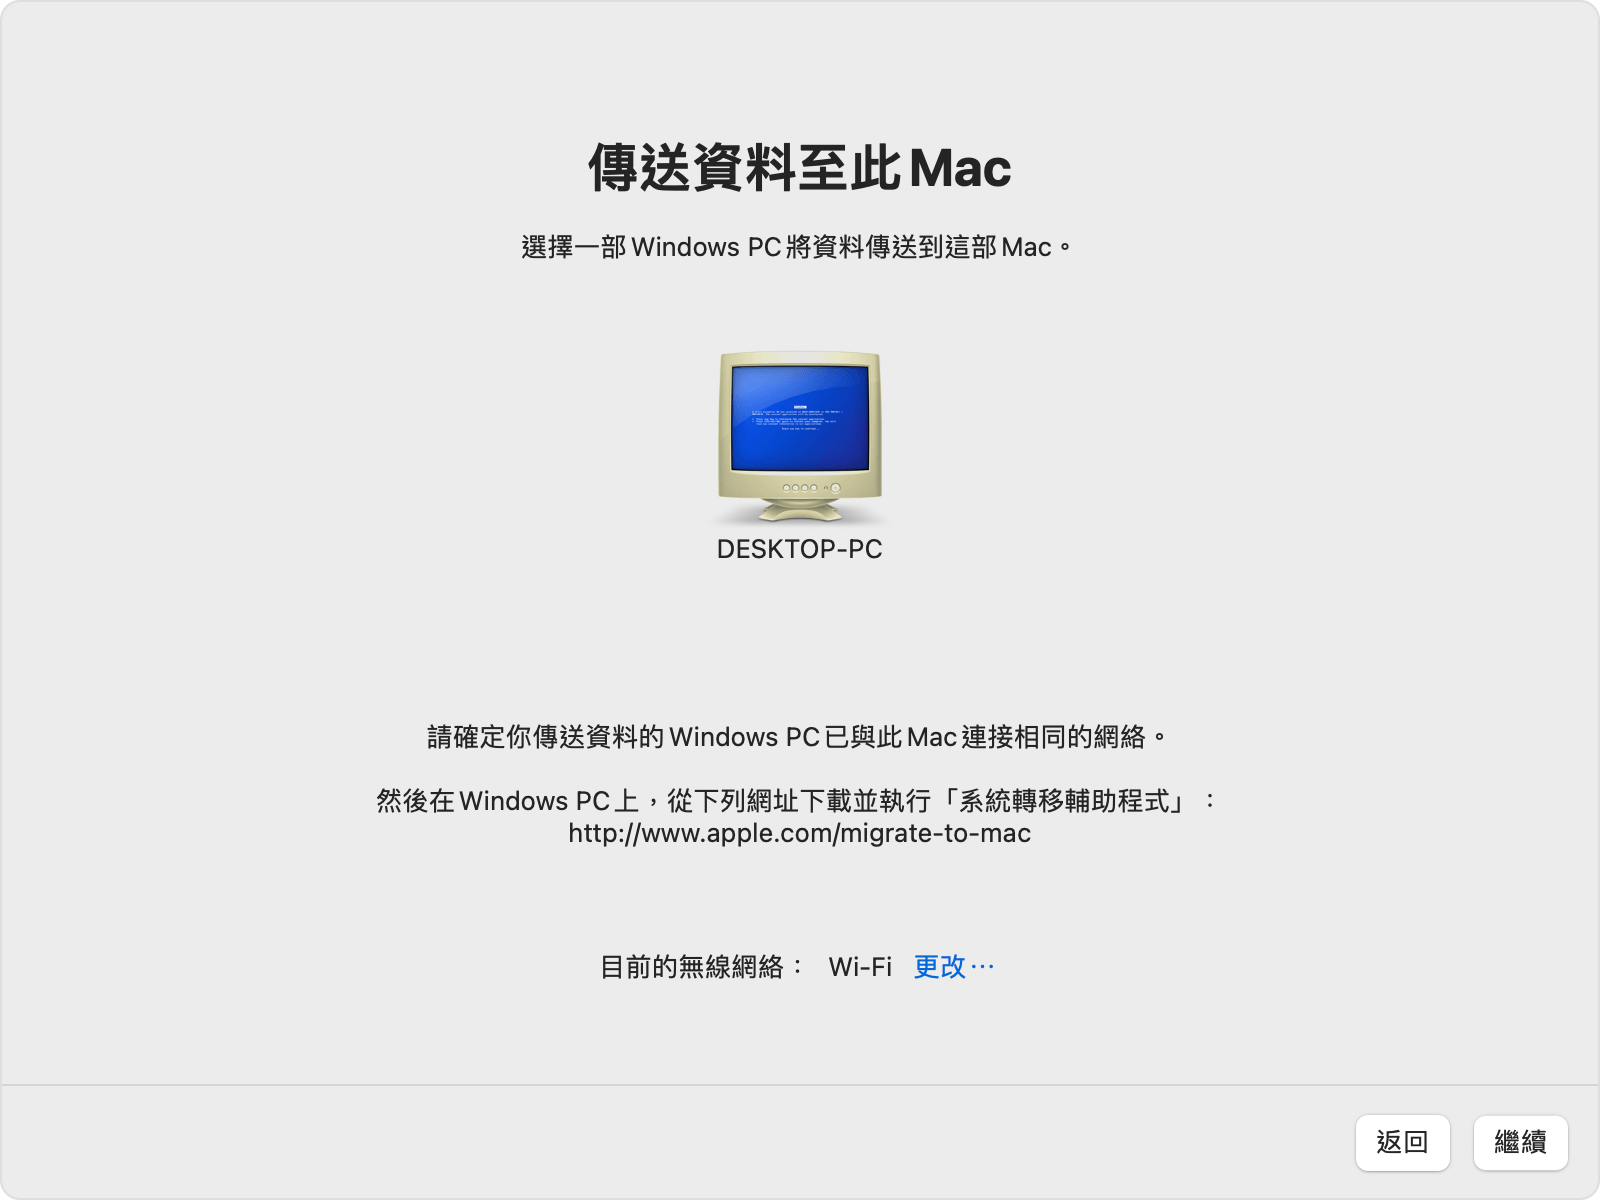 Mac 上的系統轉移輔助程式：選取 Windows PC